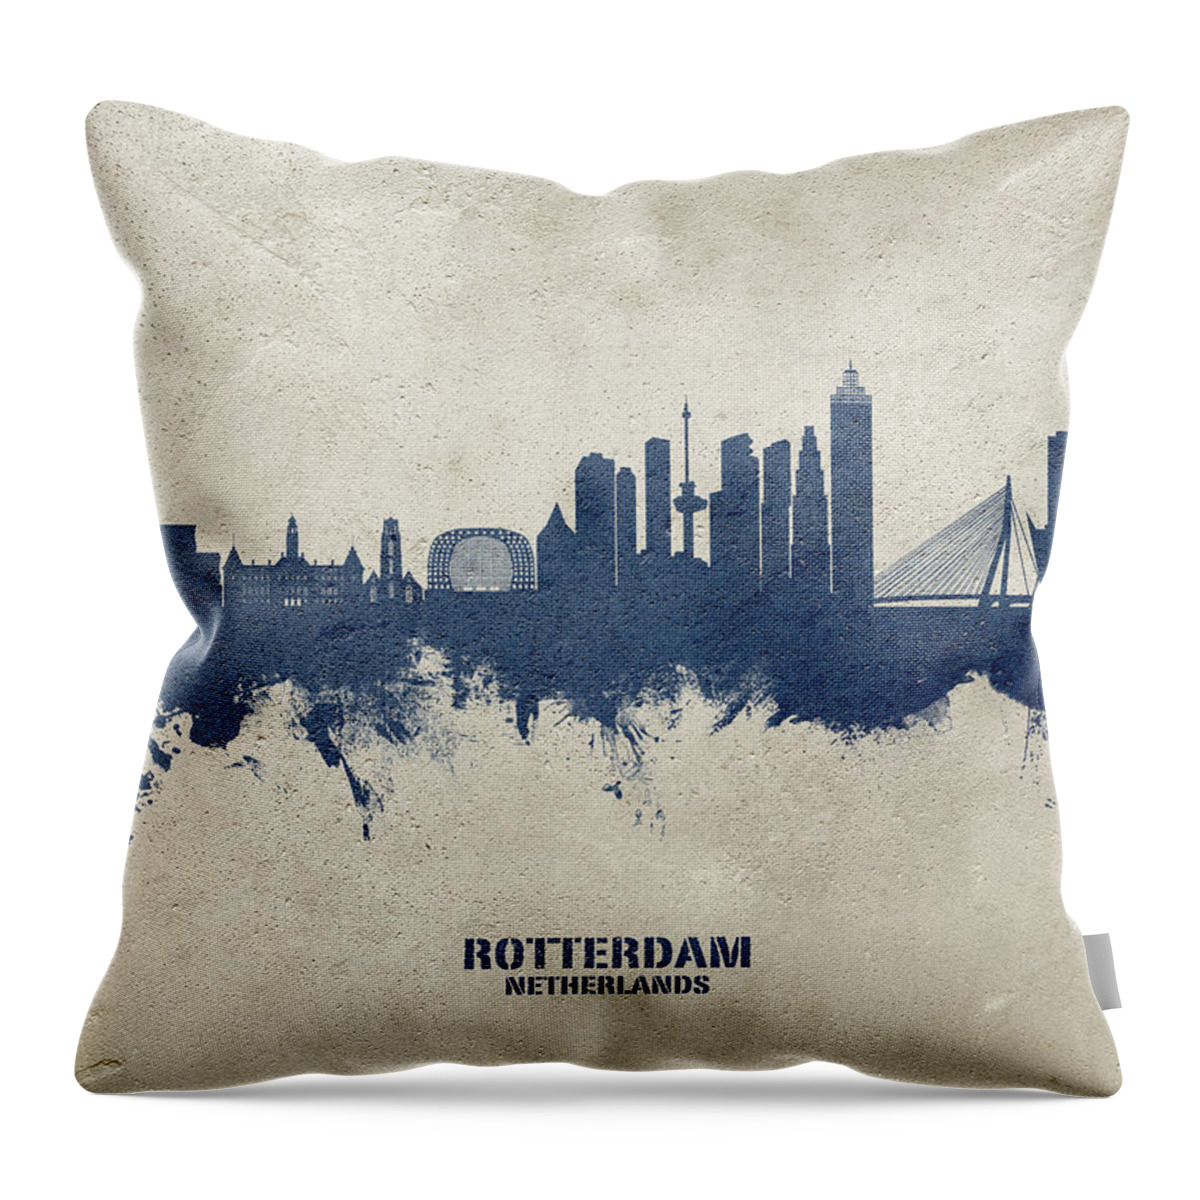 Rotterdam Throw Pillow featuring the digital art Rotterdam The Netherlands Skyline #10b by Michael Tompsett